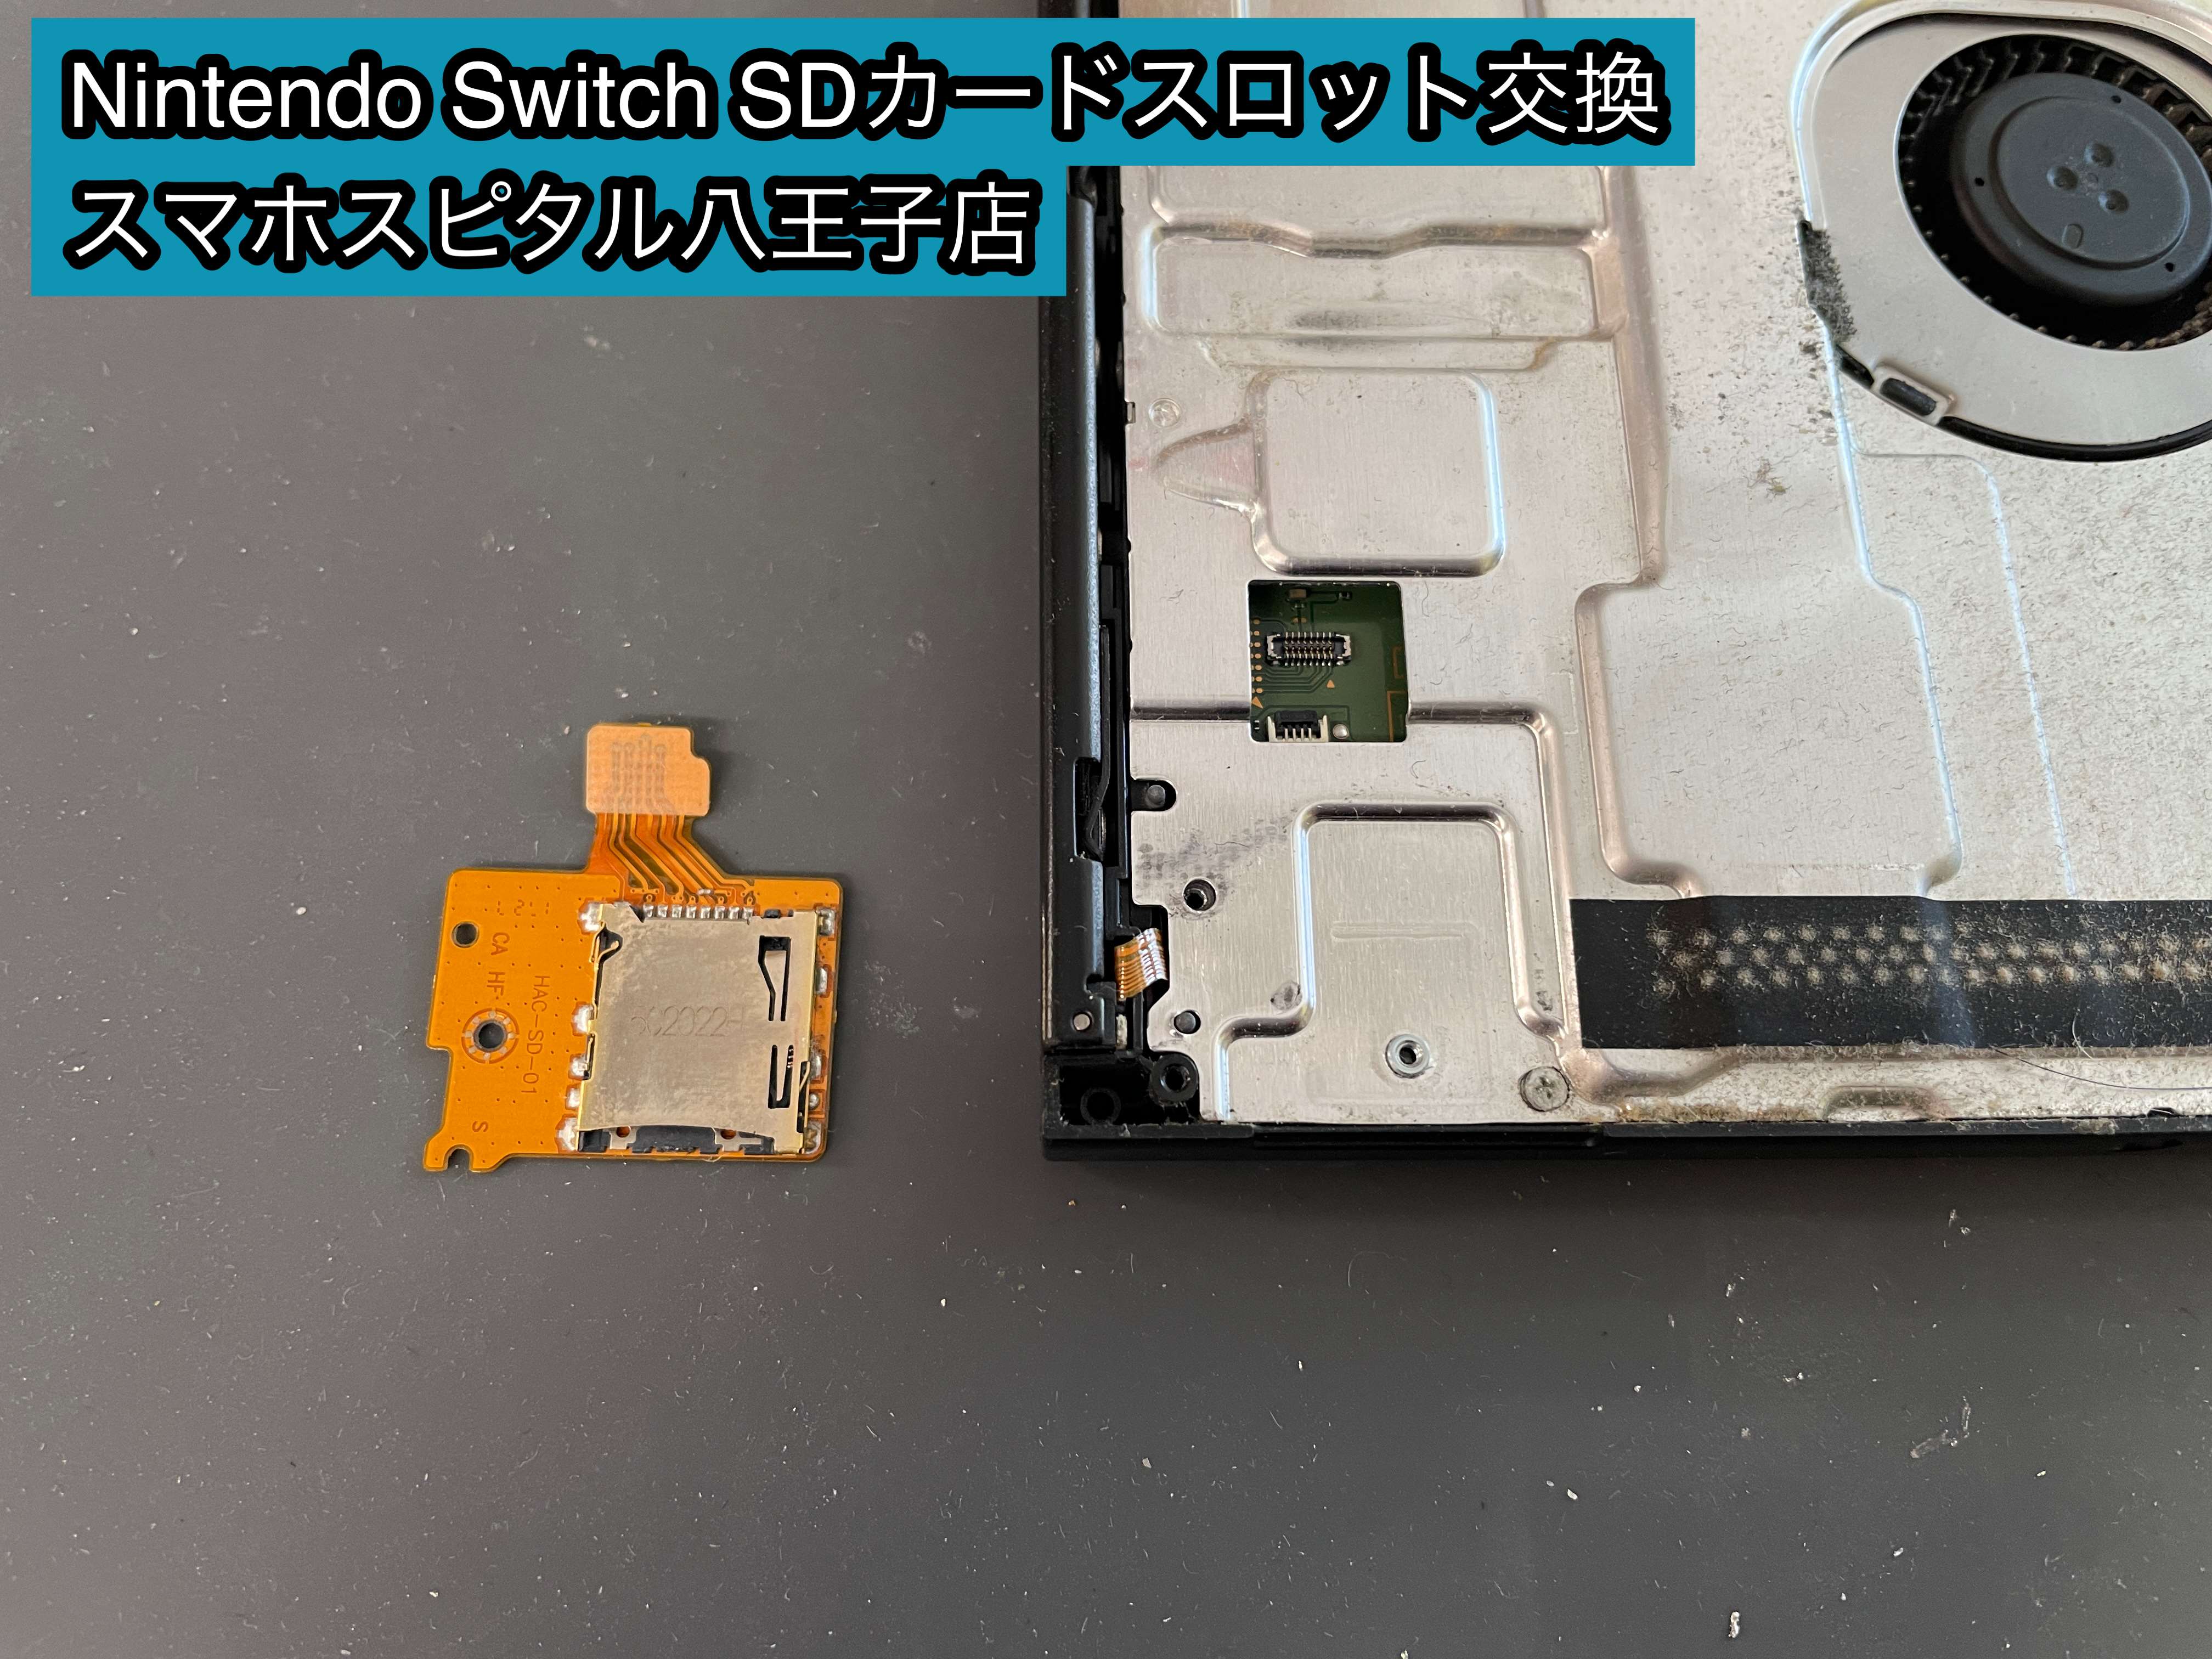 任天堂Switch旧型本日3時までの価格とさせていただきます❗️